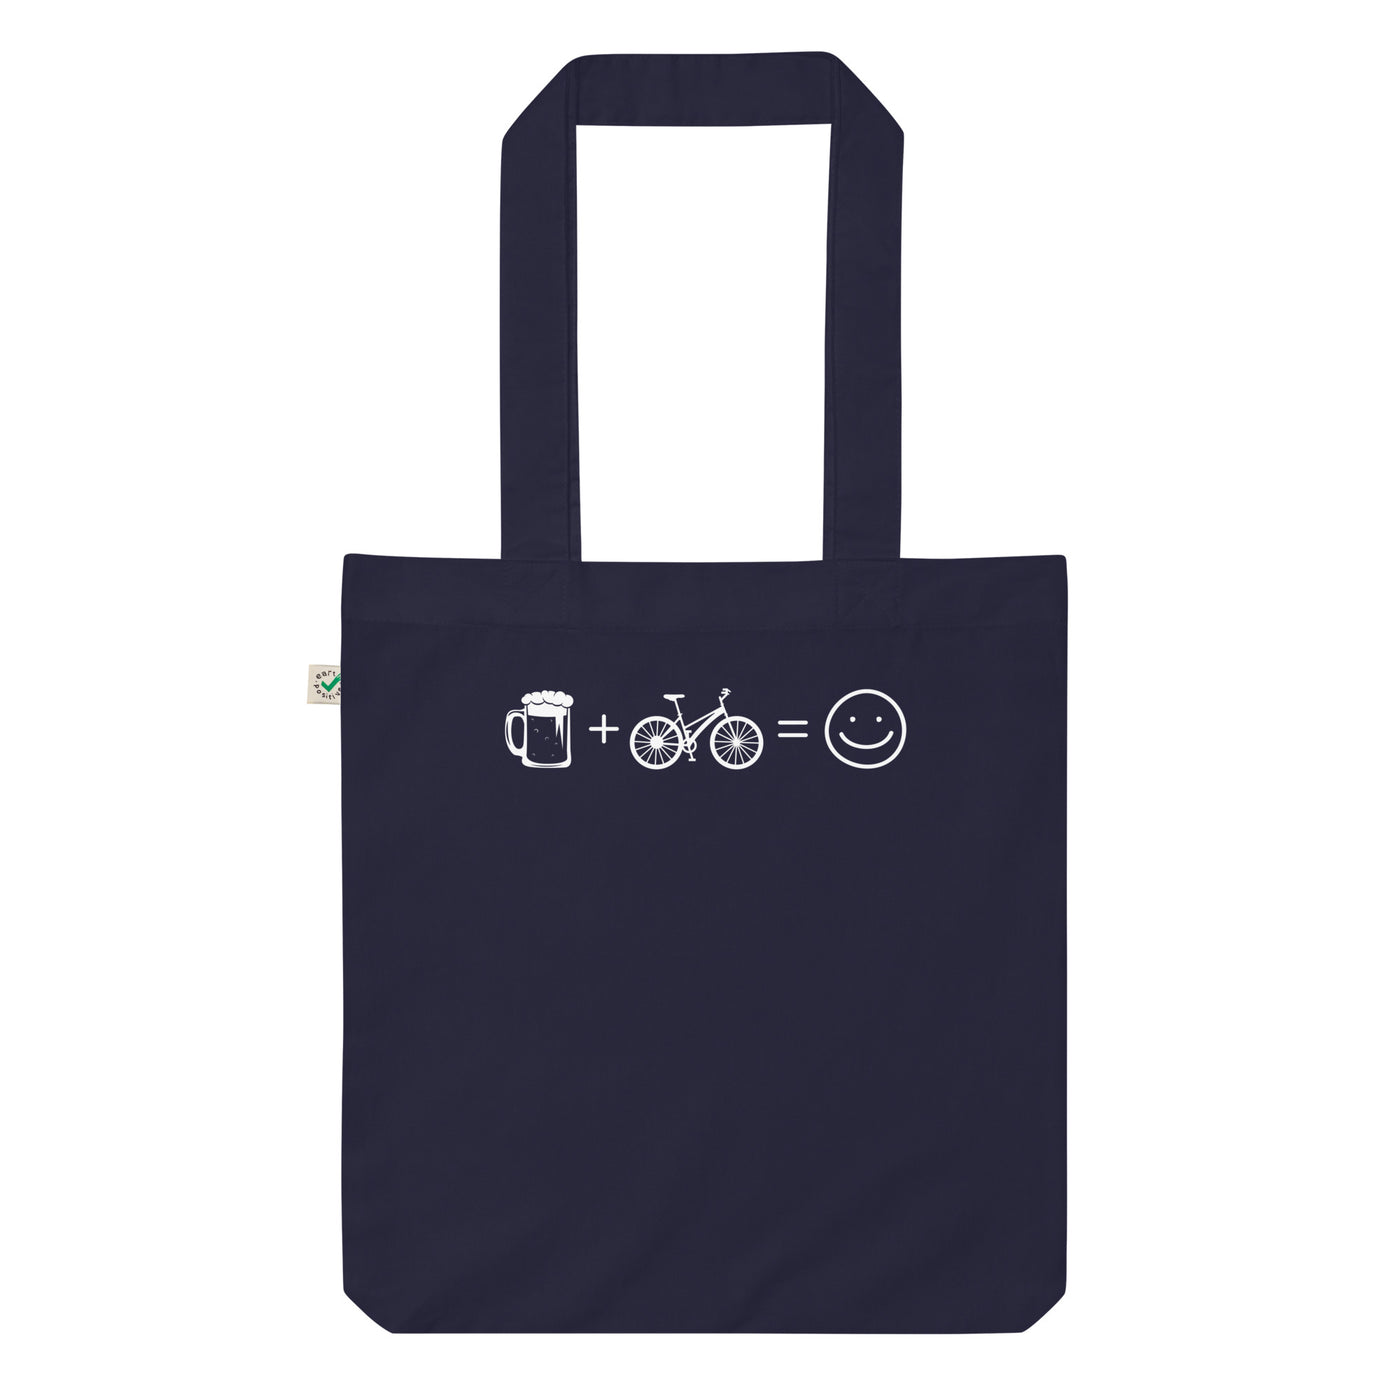 Bierlächeln Und Radfahren - Organic Einkaufstasche fahrrad